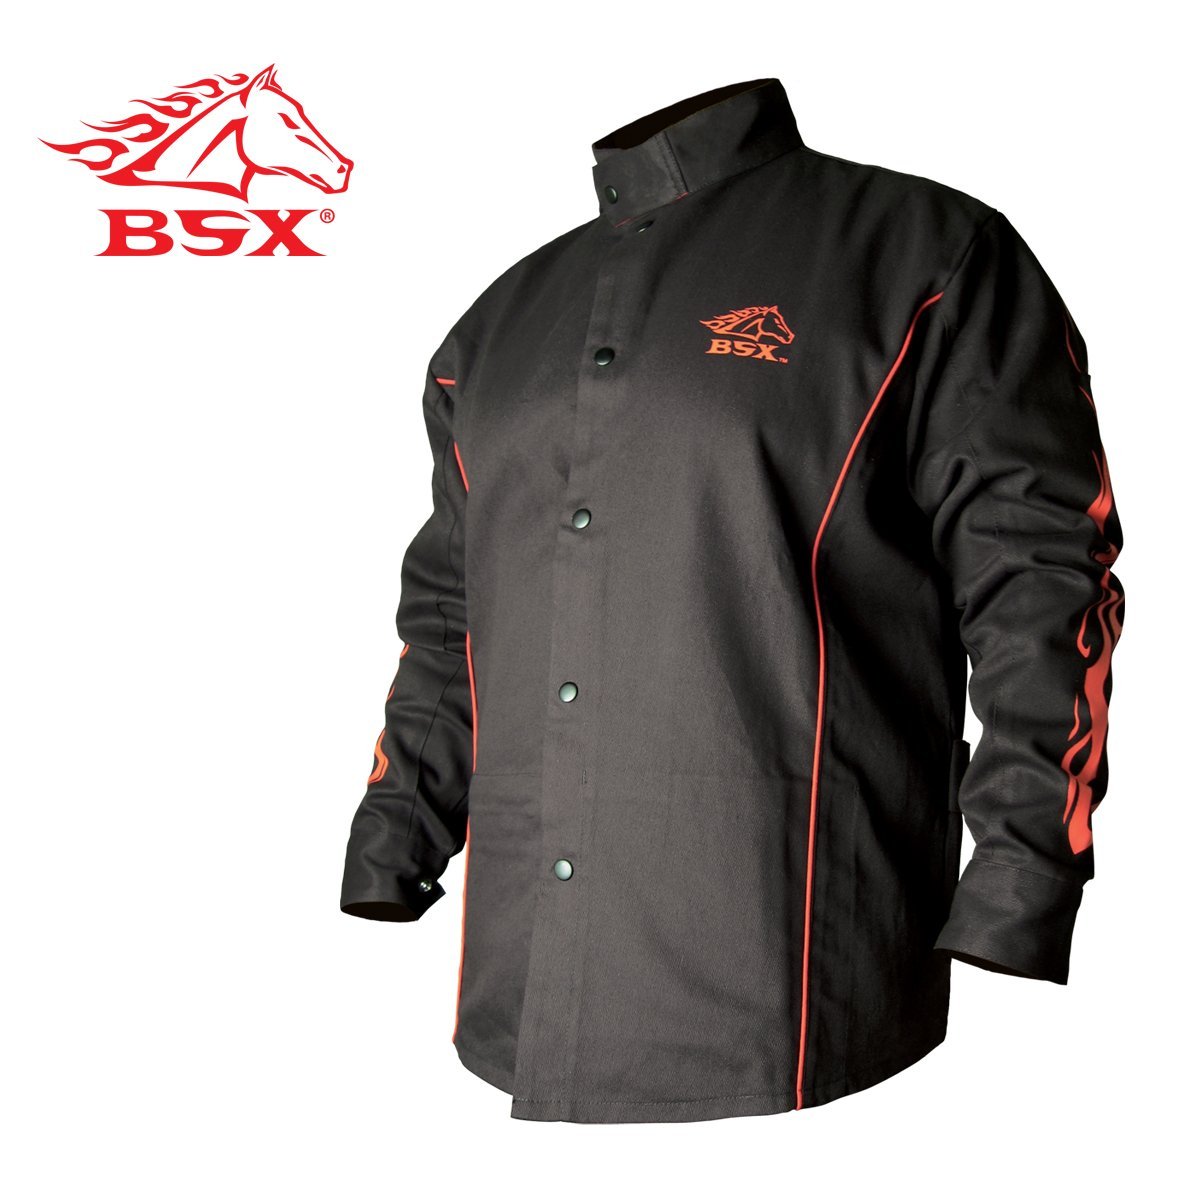 Revco Bsx Welding Jacket